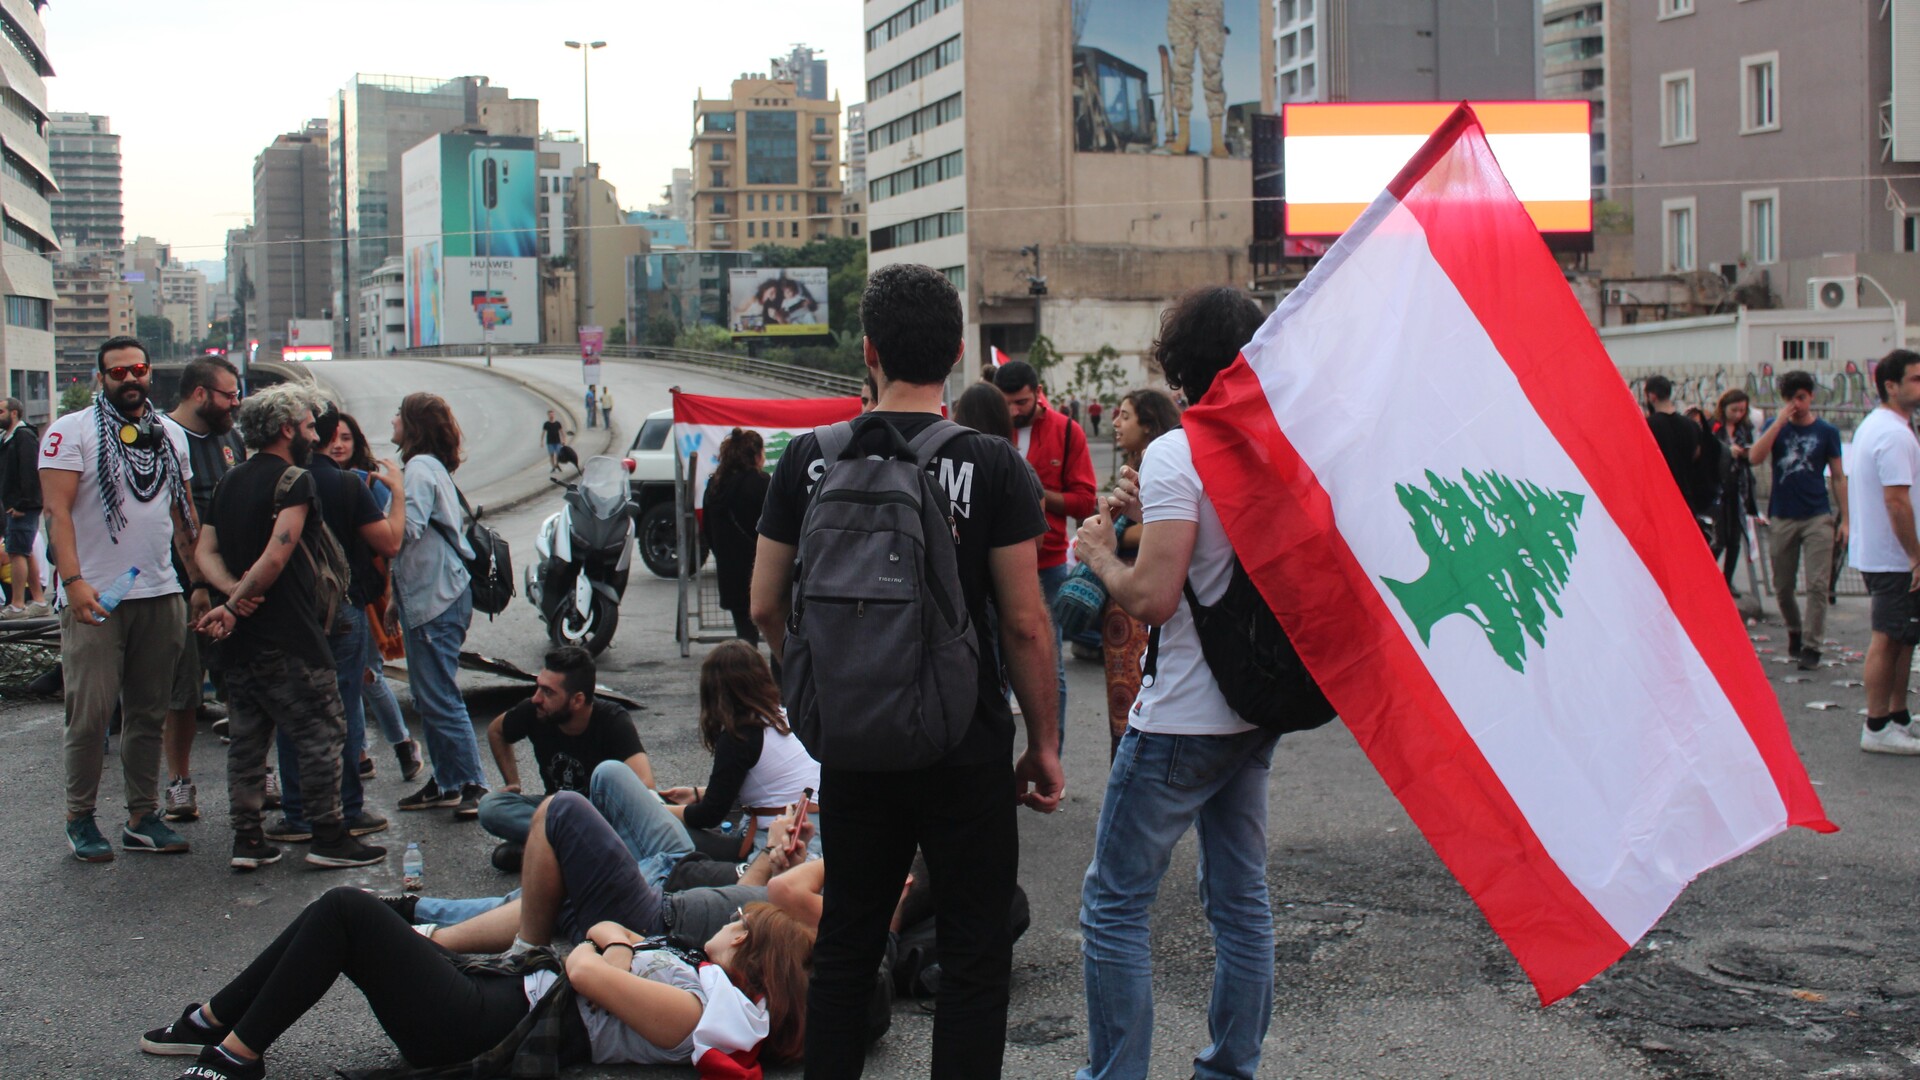 Anne Kirstine Rønn: Libanons demonstranter er enige om at ville afsætte regeringen – men det er uklart, hvad der følger efter